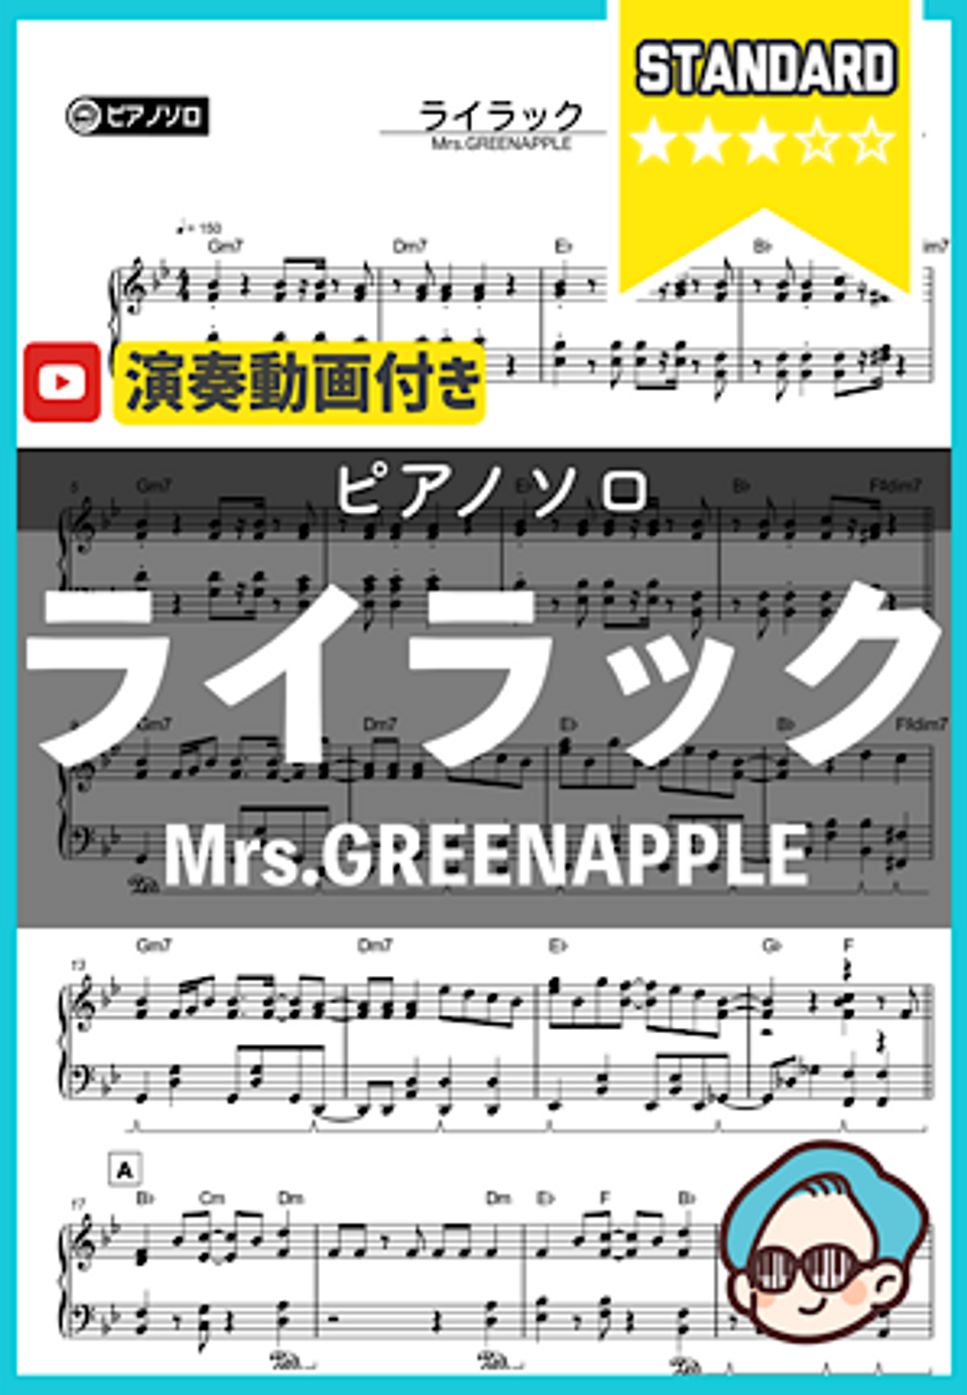 Mrs.GREENAPPLE - Lilac by THETA PIANO